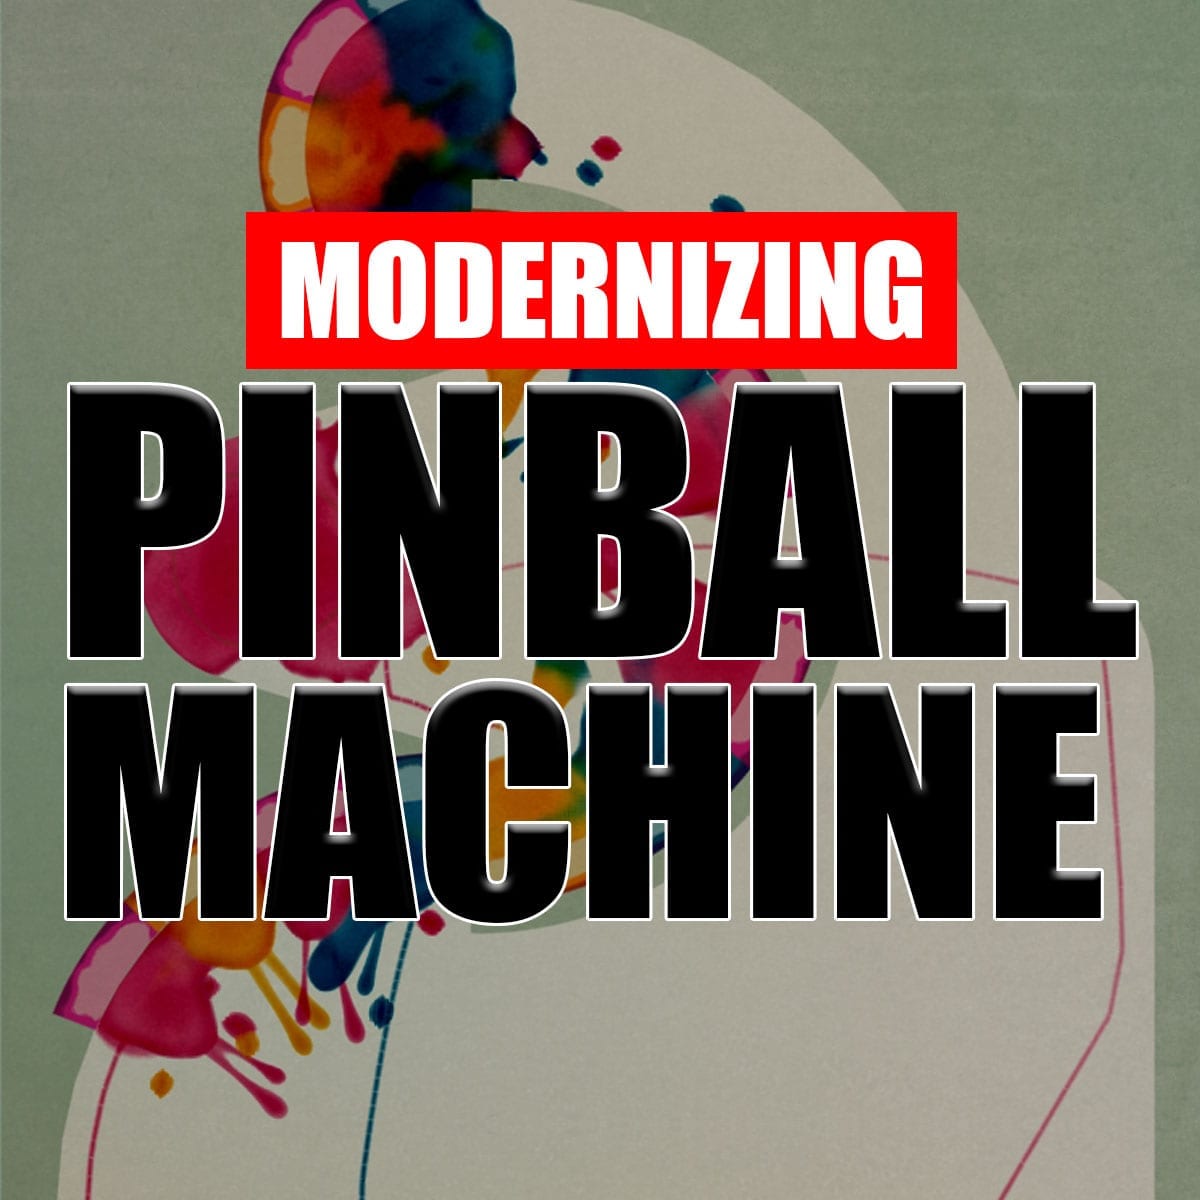 Modernizing Pinball Machine